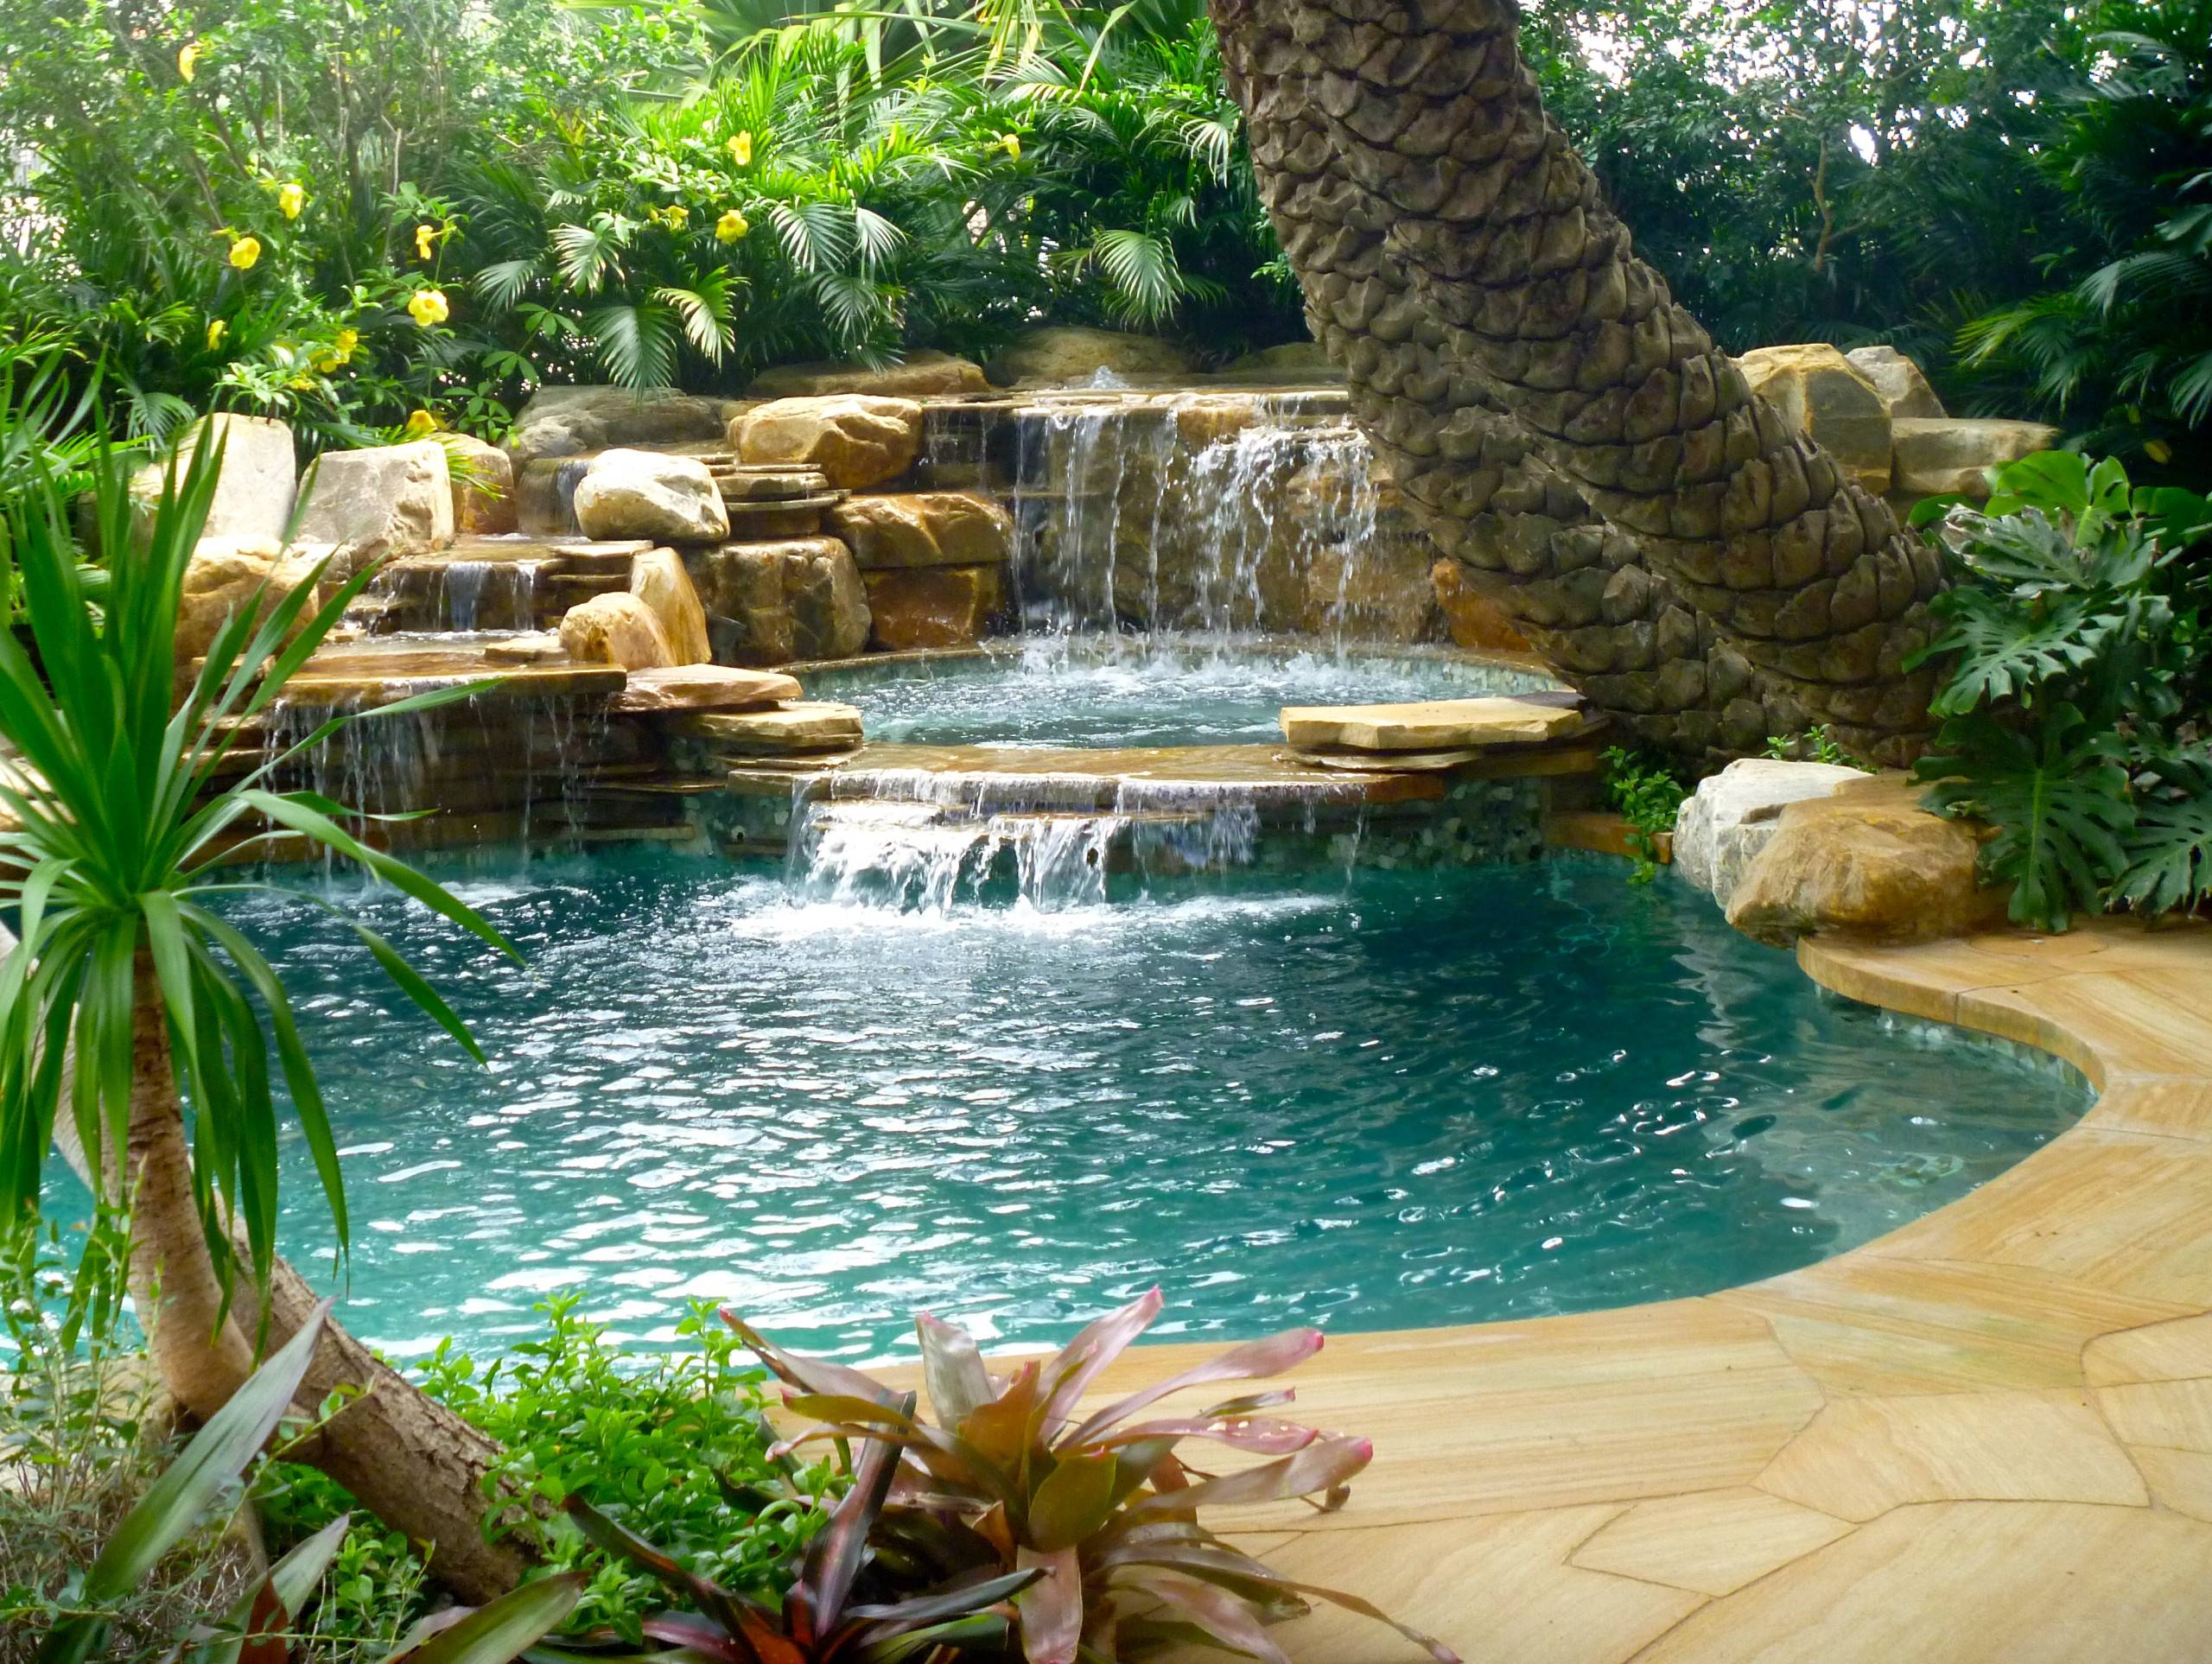 south-florida-landscaping-ideas-pool-matthew-giampietro-garden-design-img4e21961b0da12098_14-0711-1-ecd6fca-24113